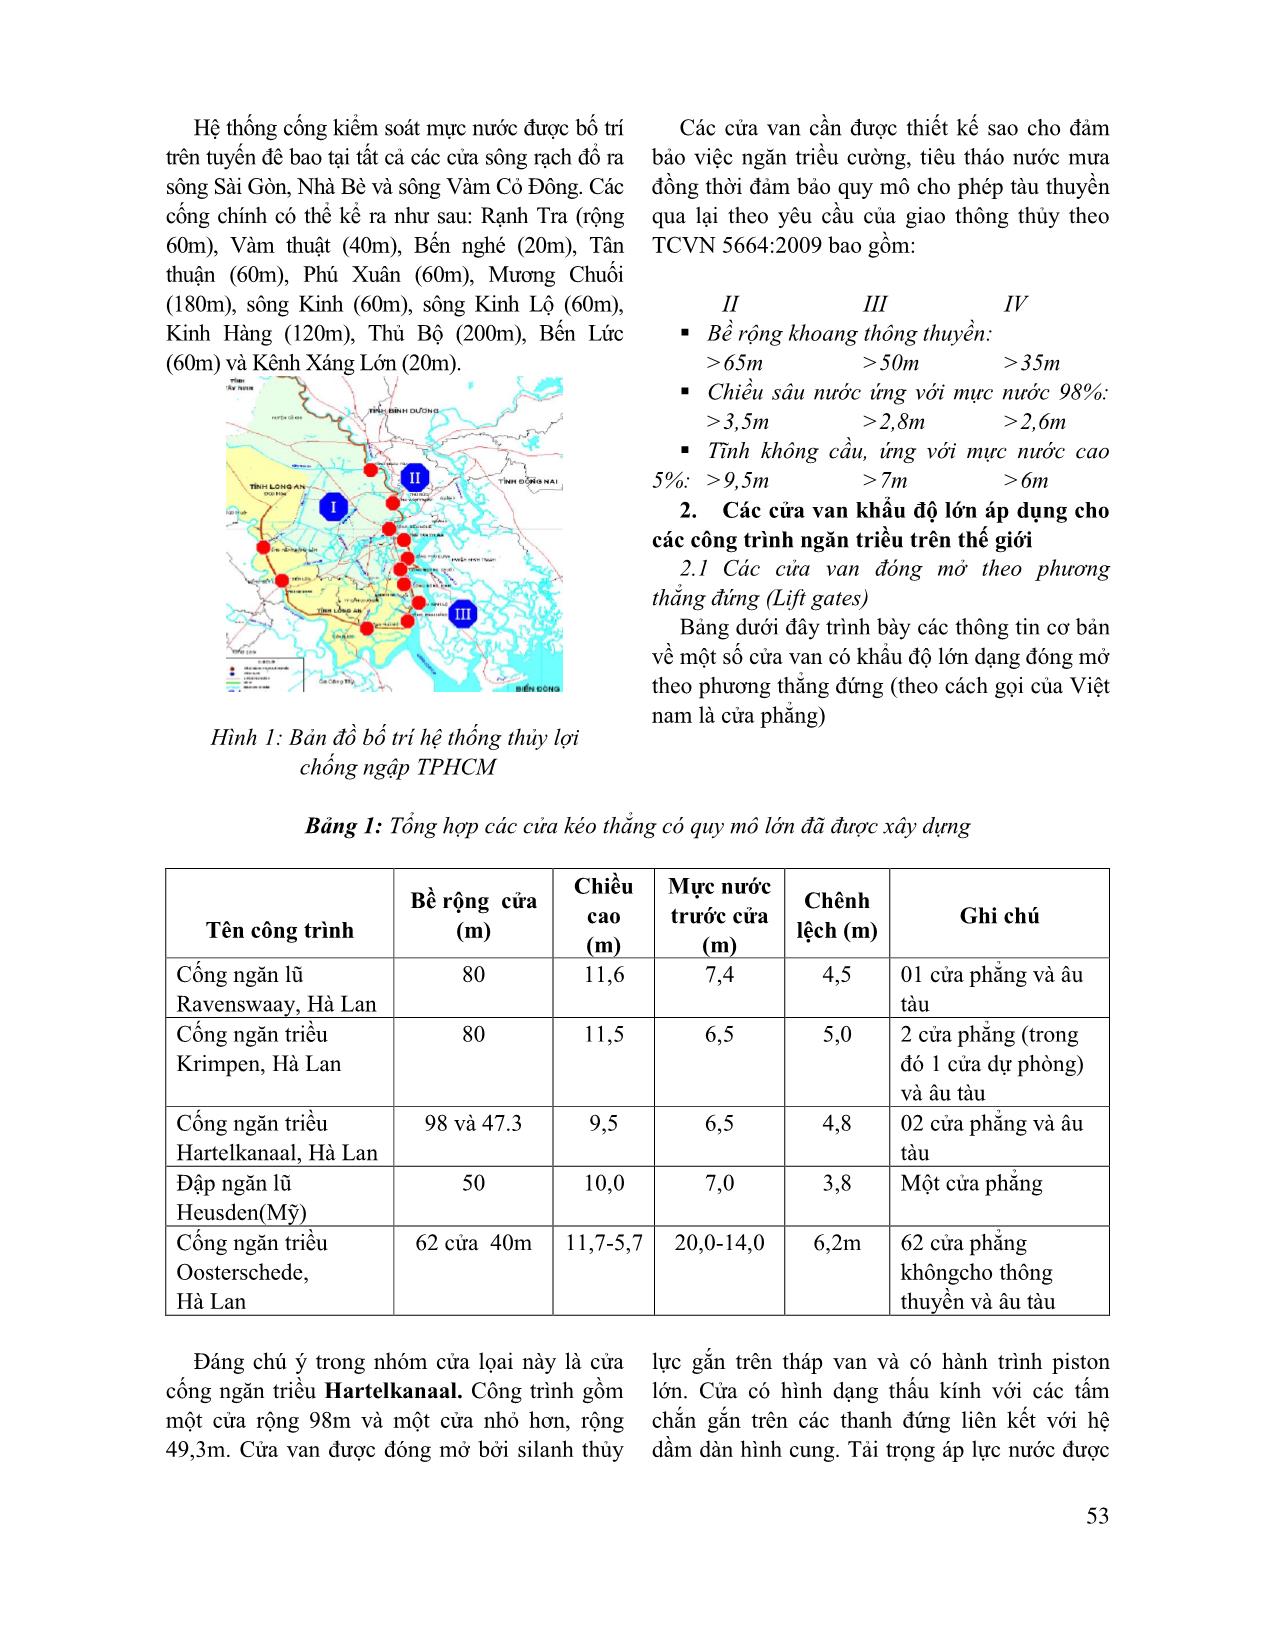 Nghiên cứu lựa chọn cửa van thích hợp cho dự án chống ngập úng khu vực thành phố Hồ Chí Minh trang 2